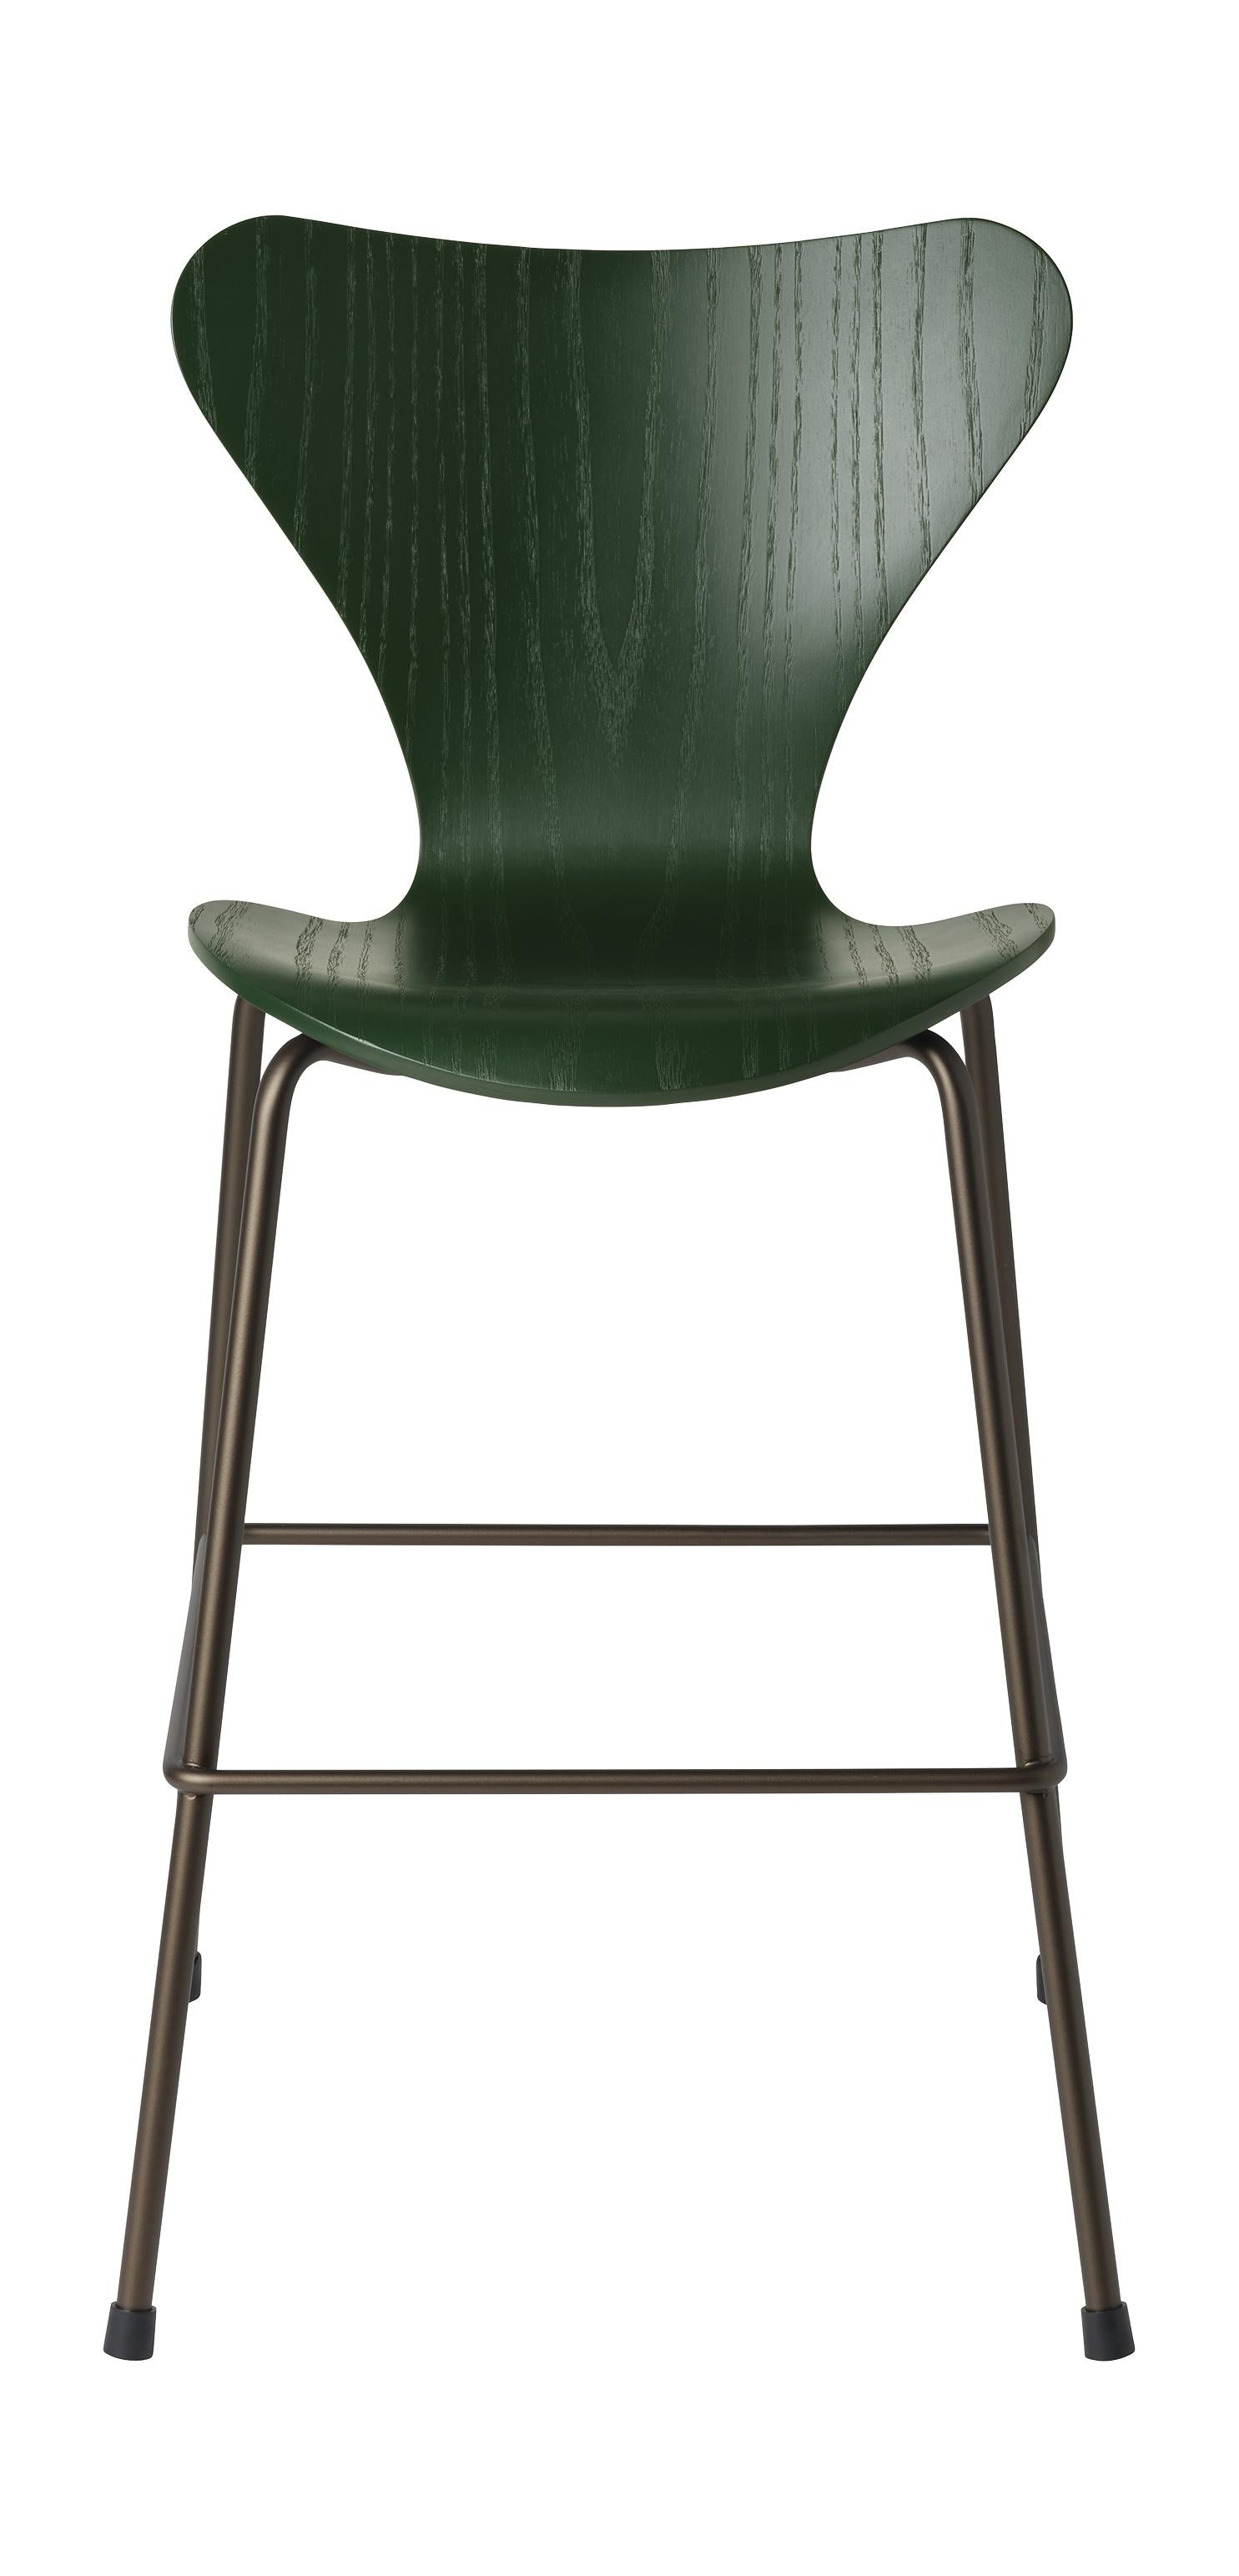 弗里茨·汉森（Fritz Hansen）系列7初级椅子，棕色青铜/常绿